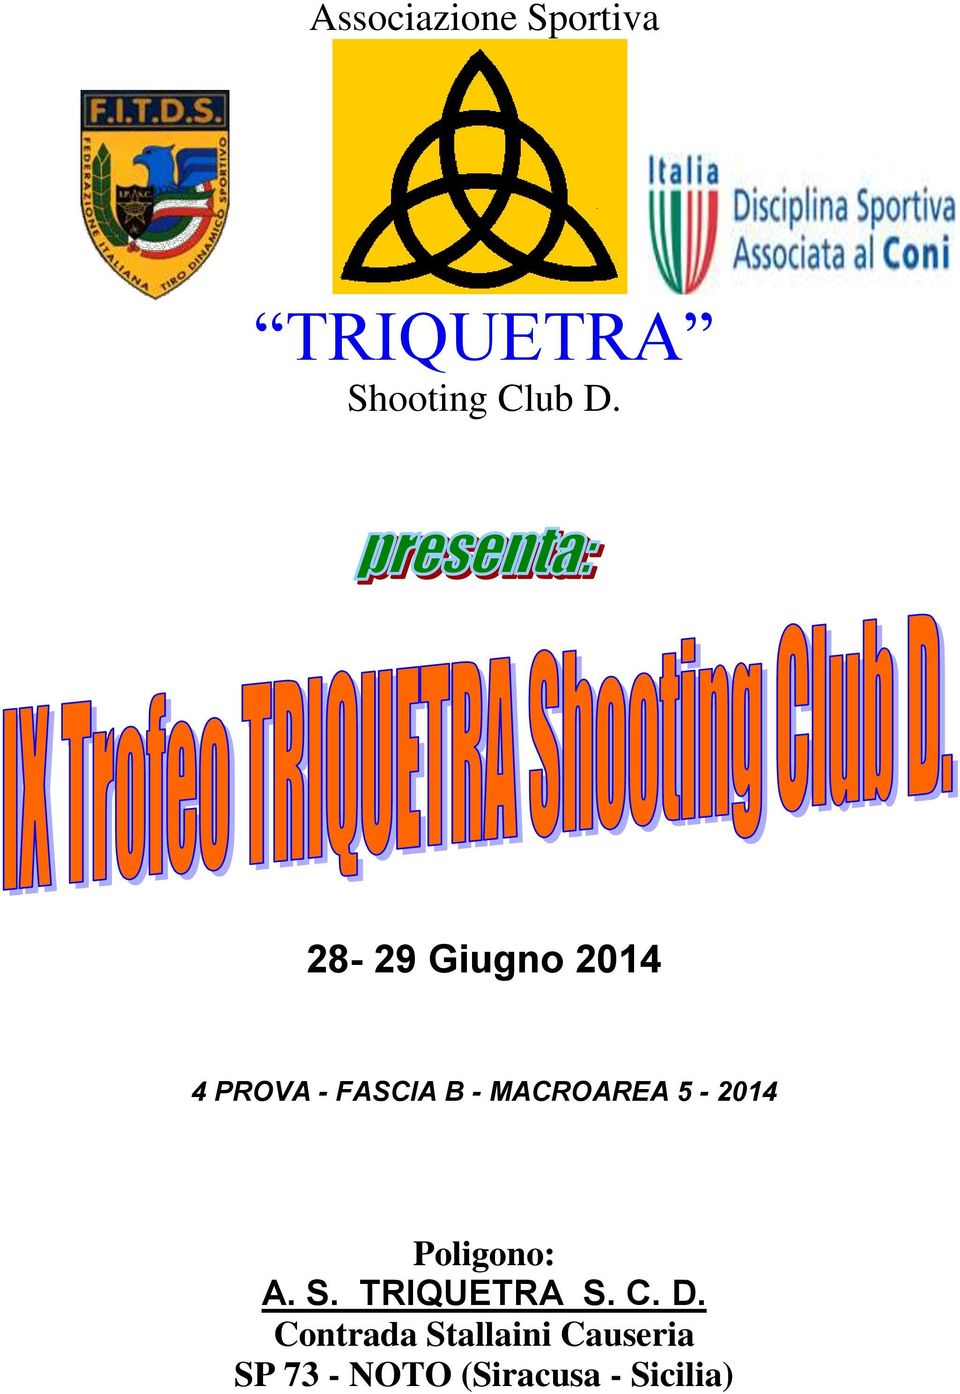 5-2014 Poligono: A. S. TRIQUETRA S. C. D.